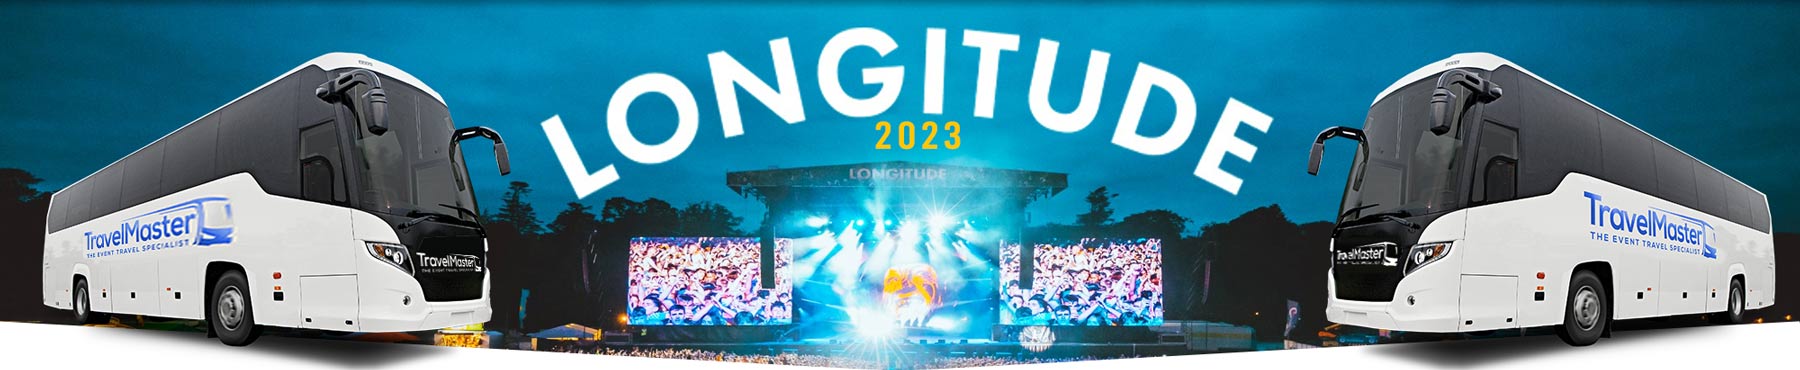 Bus to Longitude Festival 2023 Banner